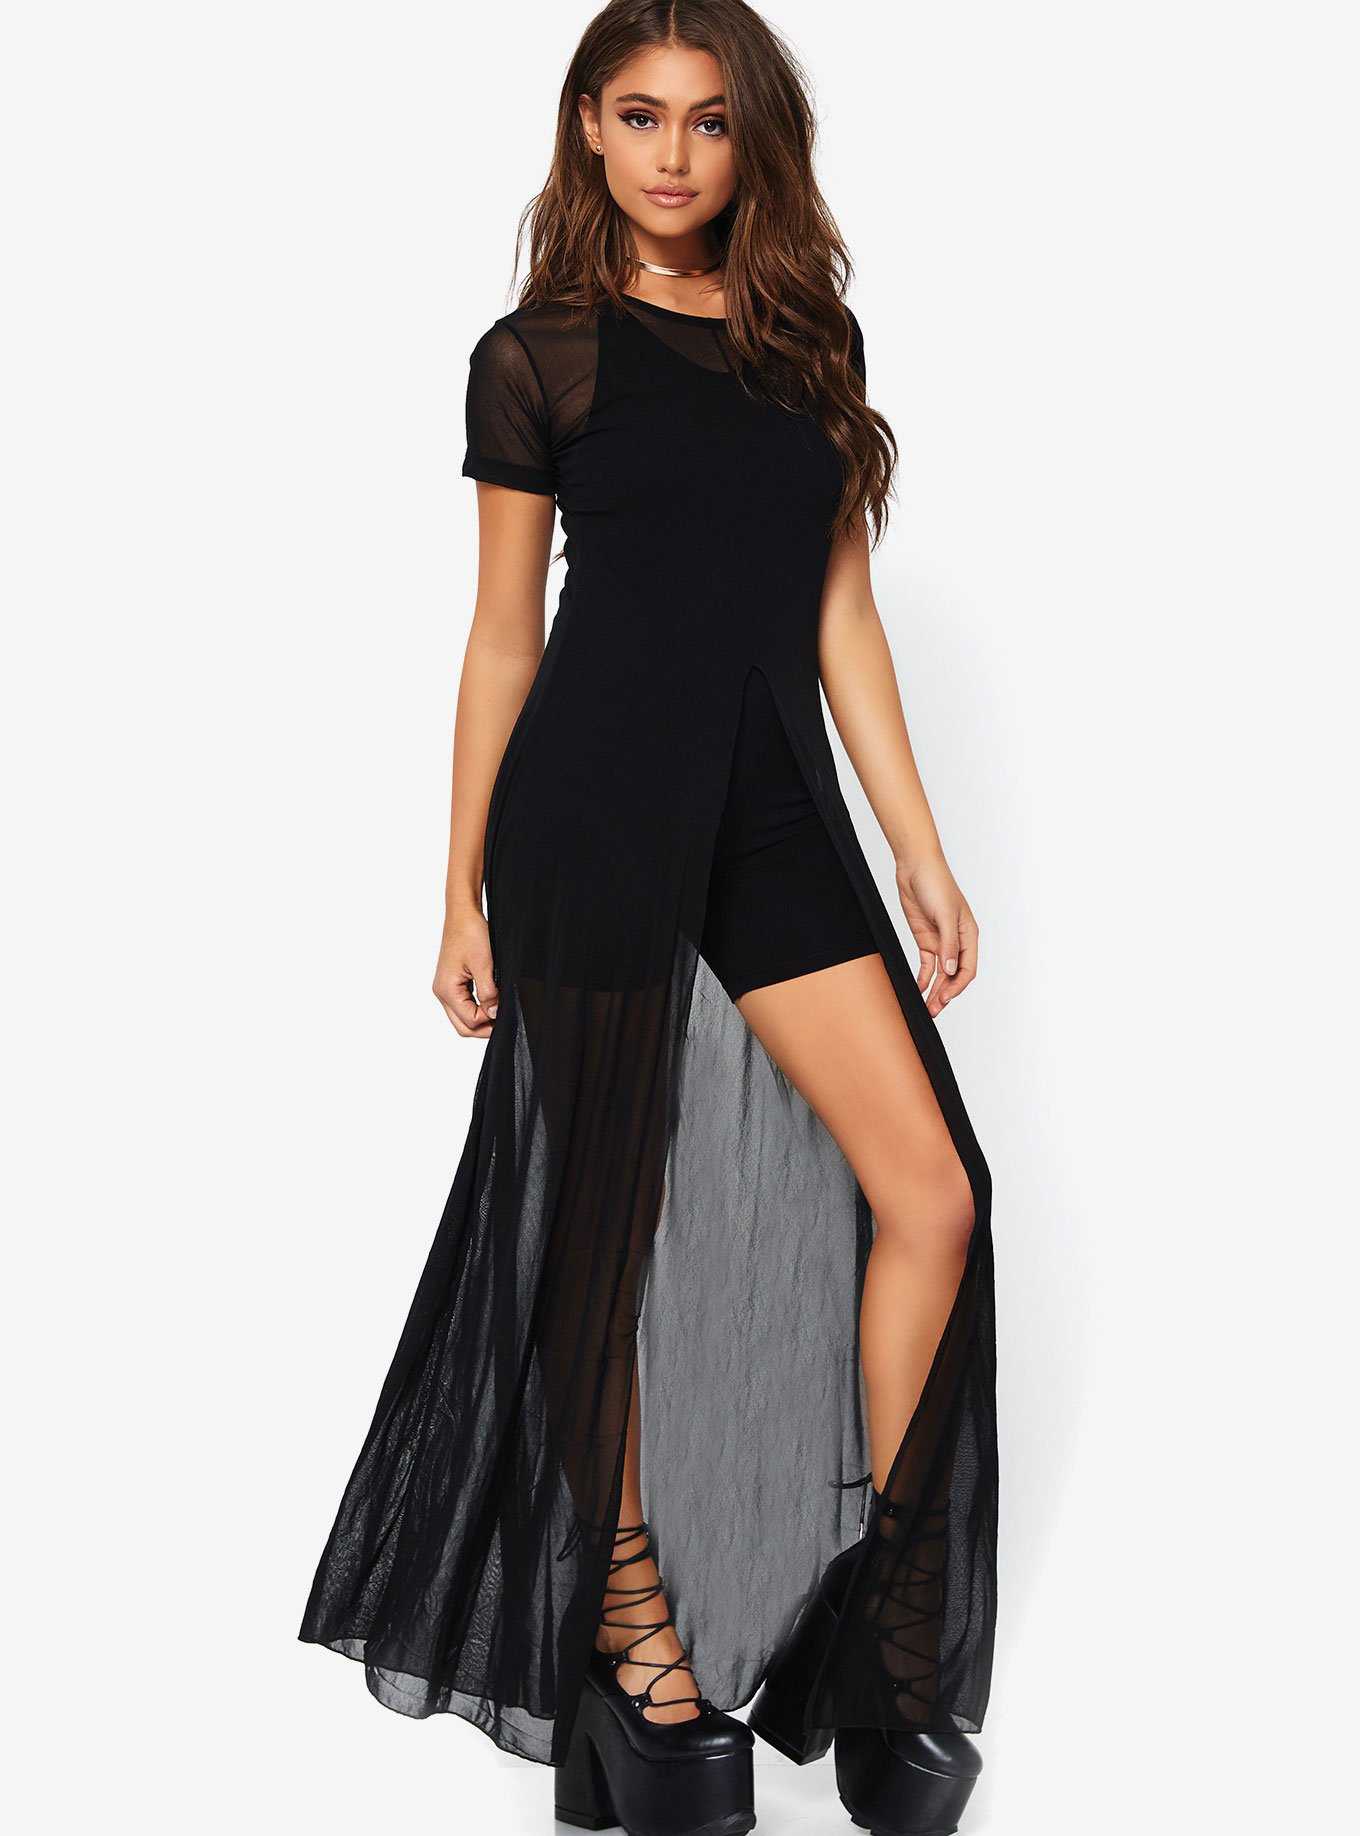 Black Sheer High Slit Dress, , hi-res